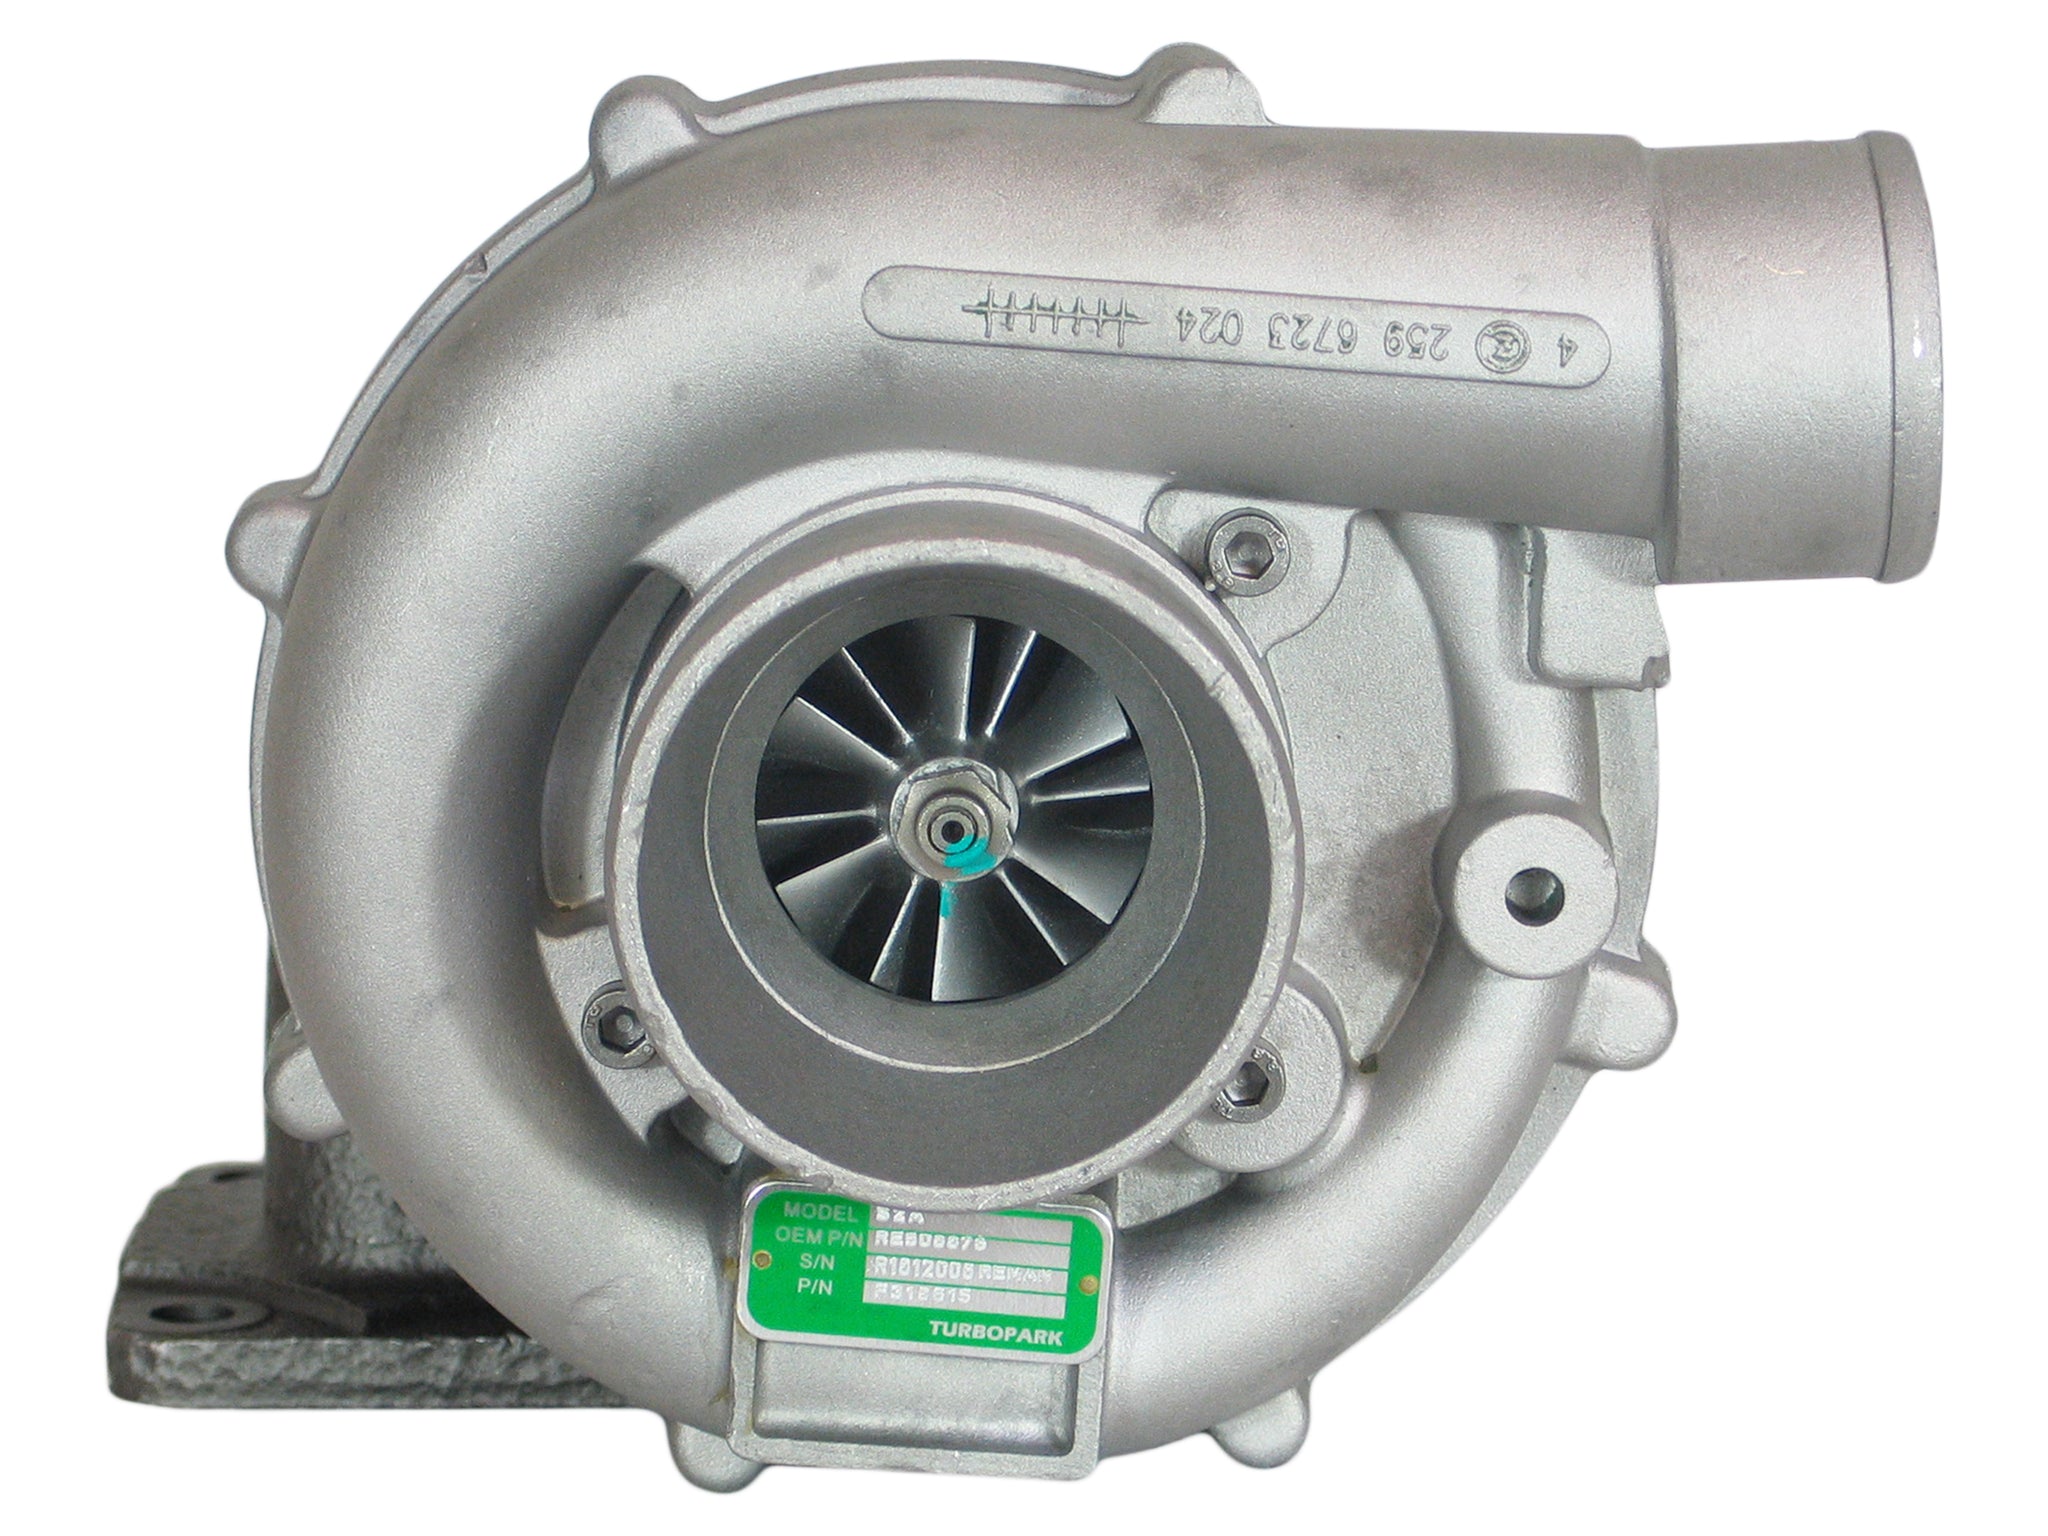 S2A Turbo John Deere Industrial Gen Set 4045 4045T 4.5L Diesel Engine 318615